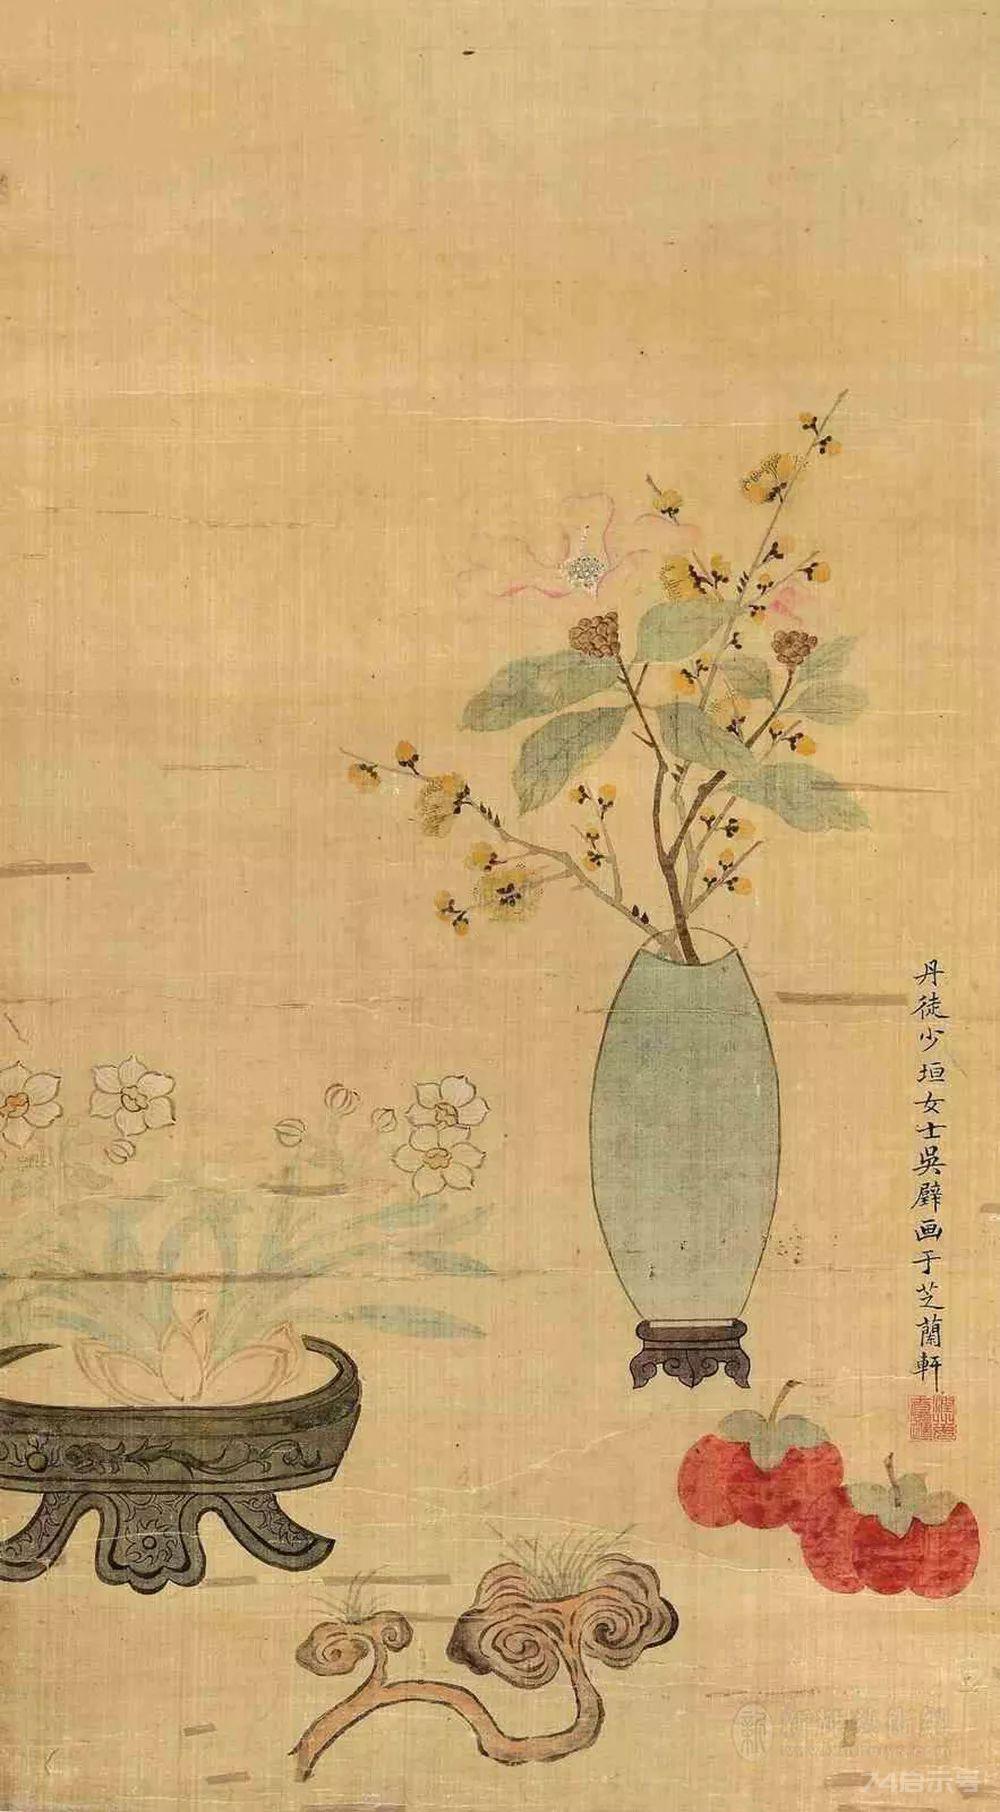 《清供圖》與中國古代文人的春節格調